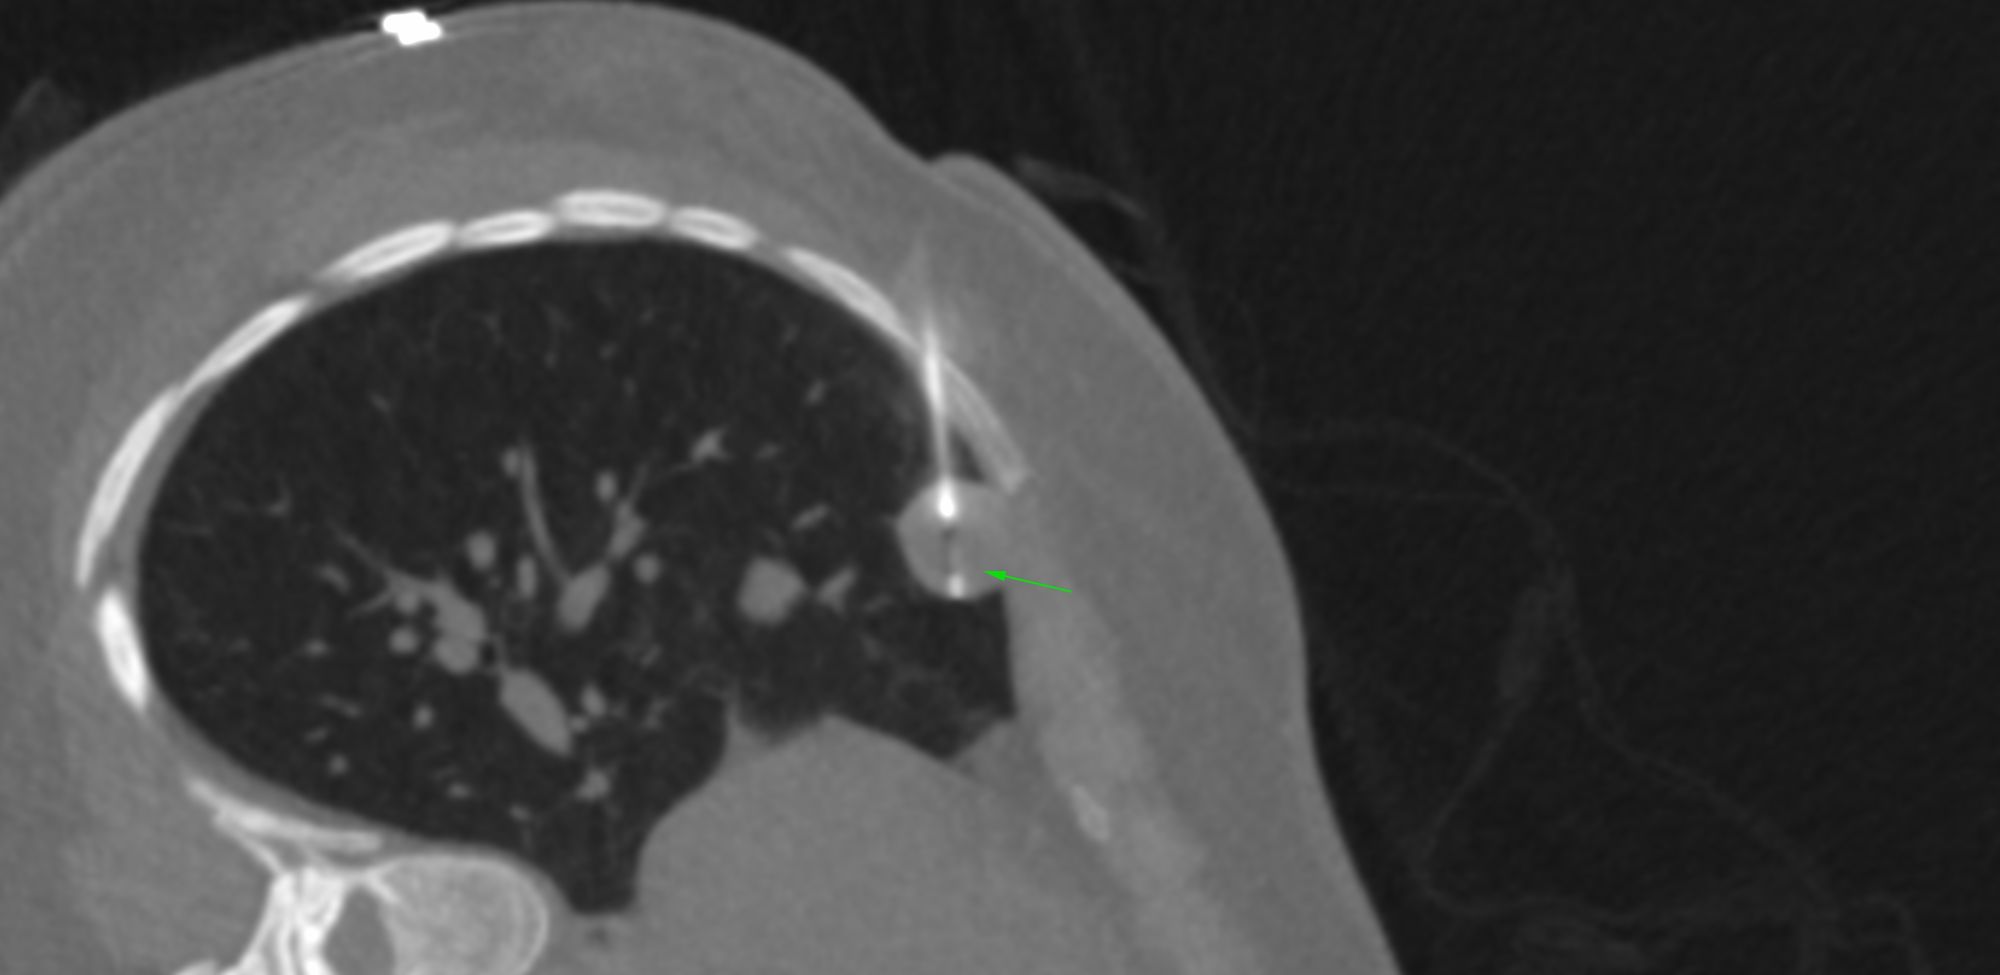 Case 34: 18 mm Right Middle Lobe Subpleural Lung Nodule - Decubitus Approach